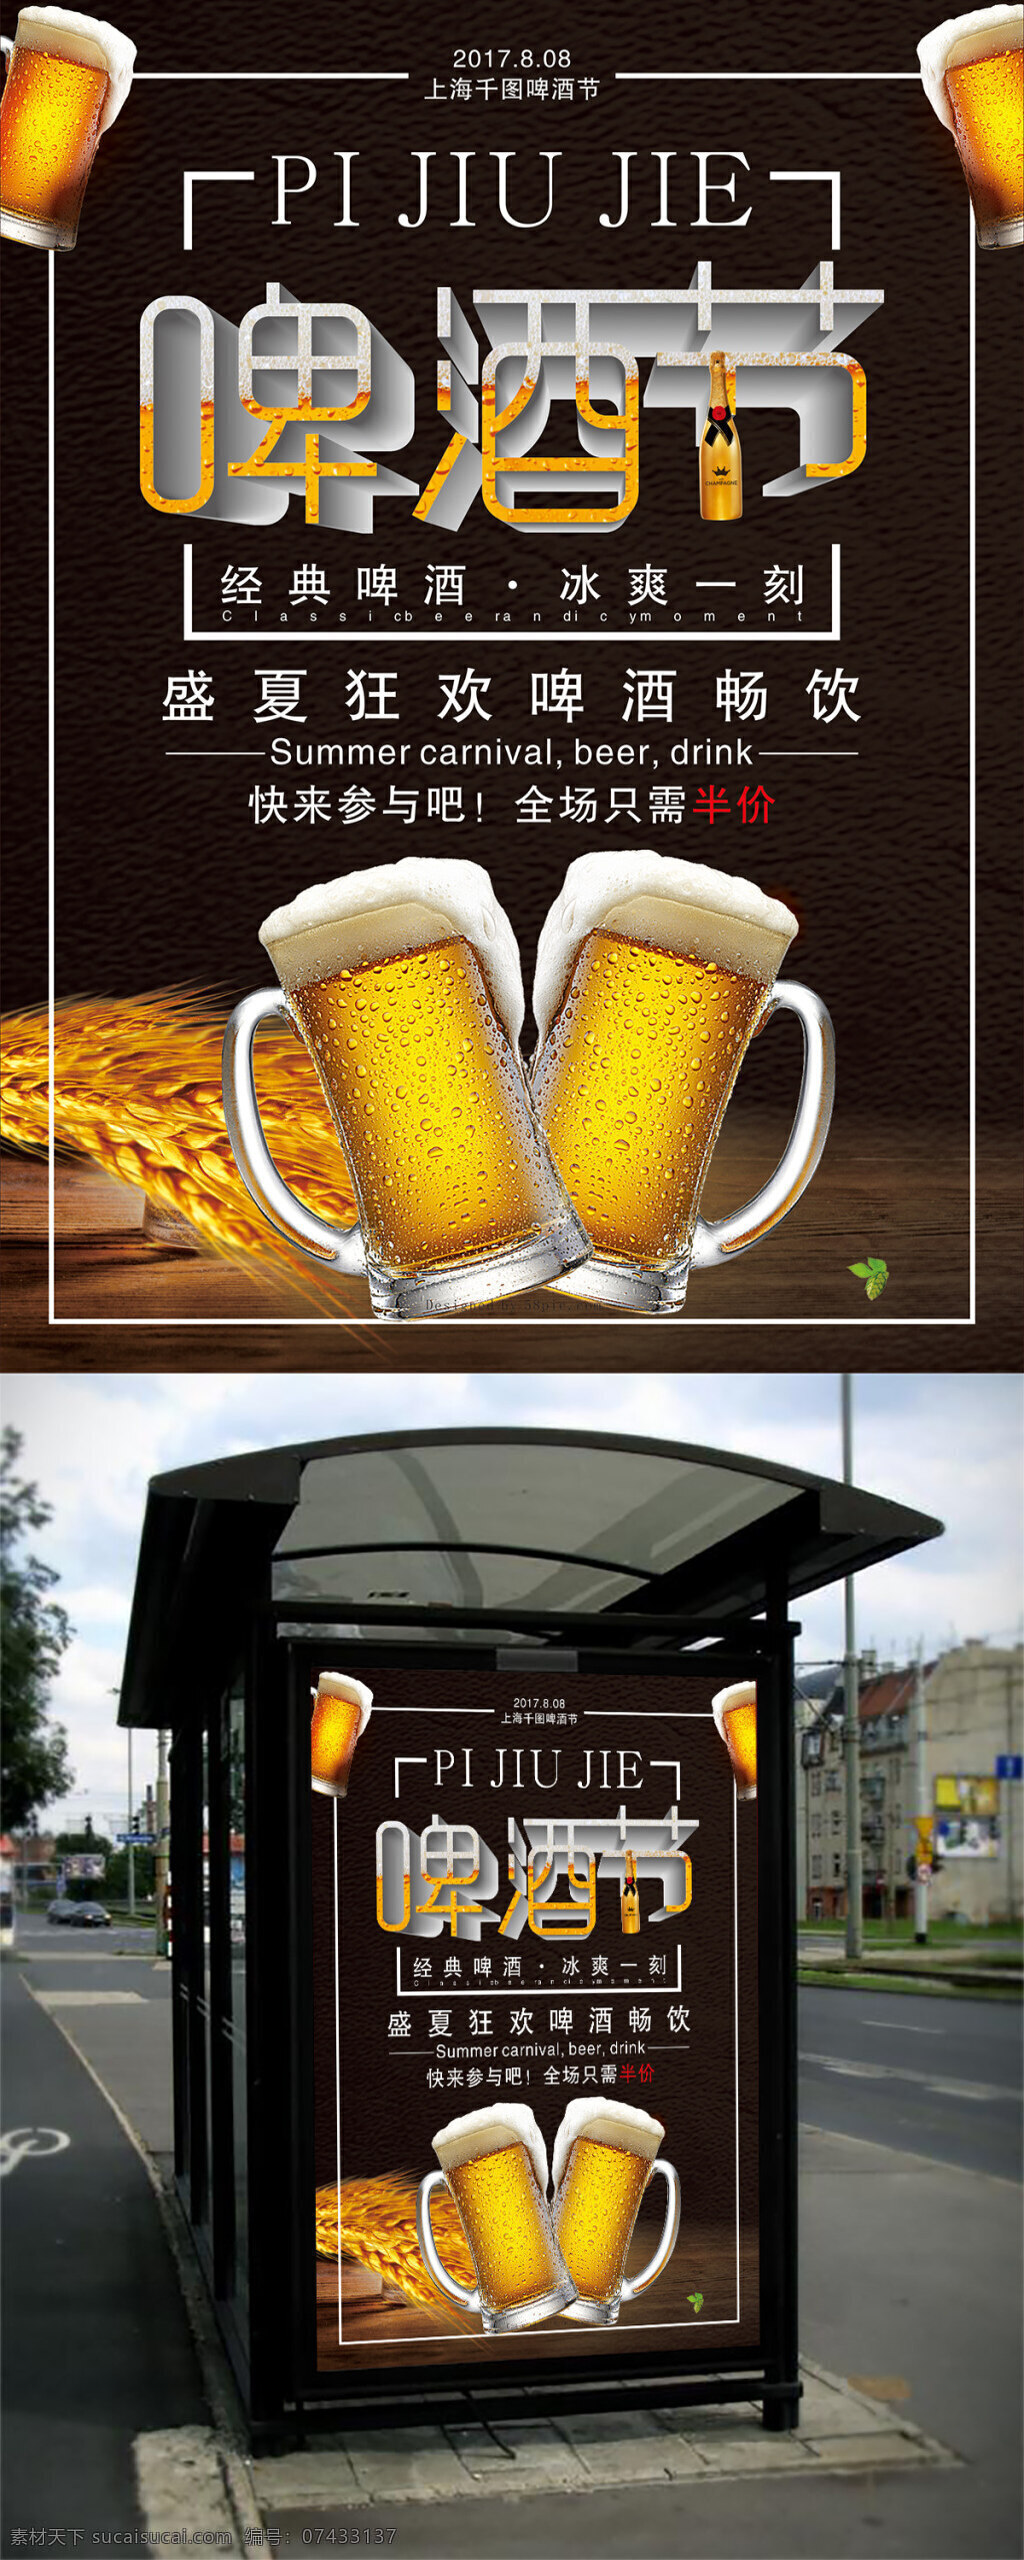 啤酒 促销 宣传海报 啤酒海报 啤酒节艺术字 啤酒促销海报 黑色背景